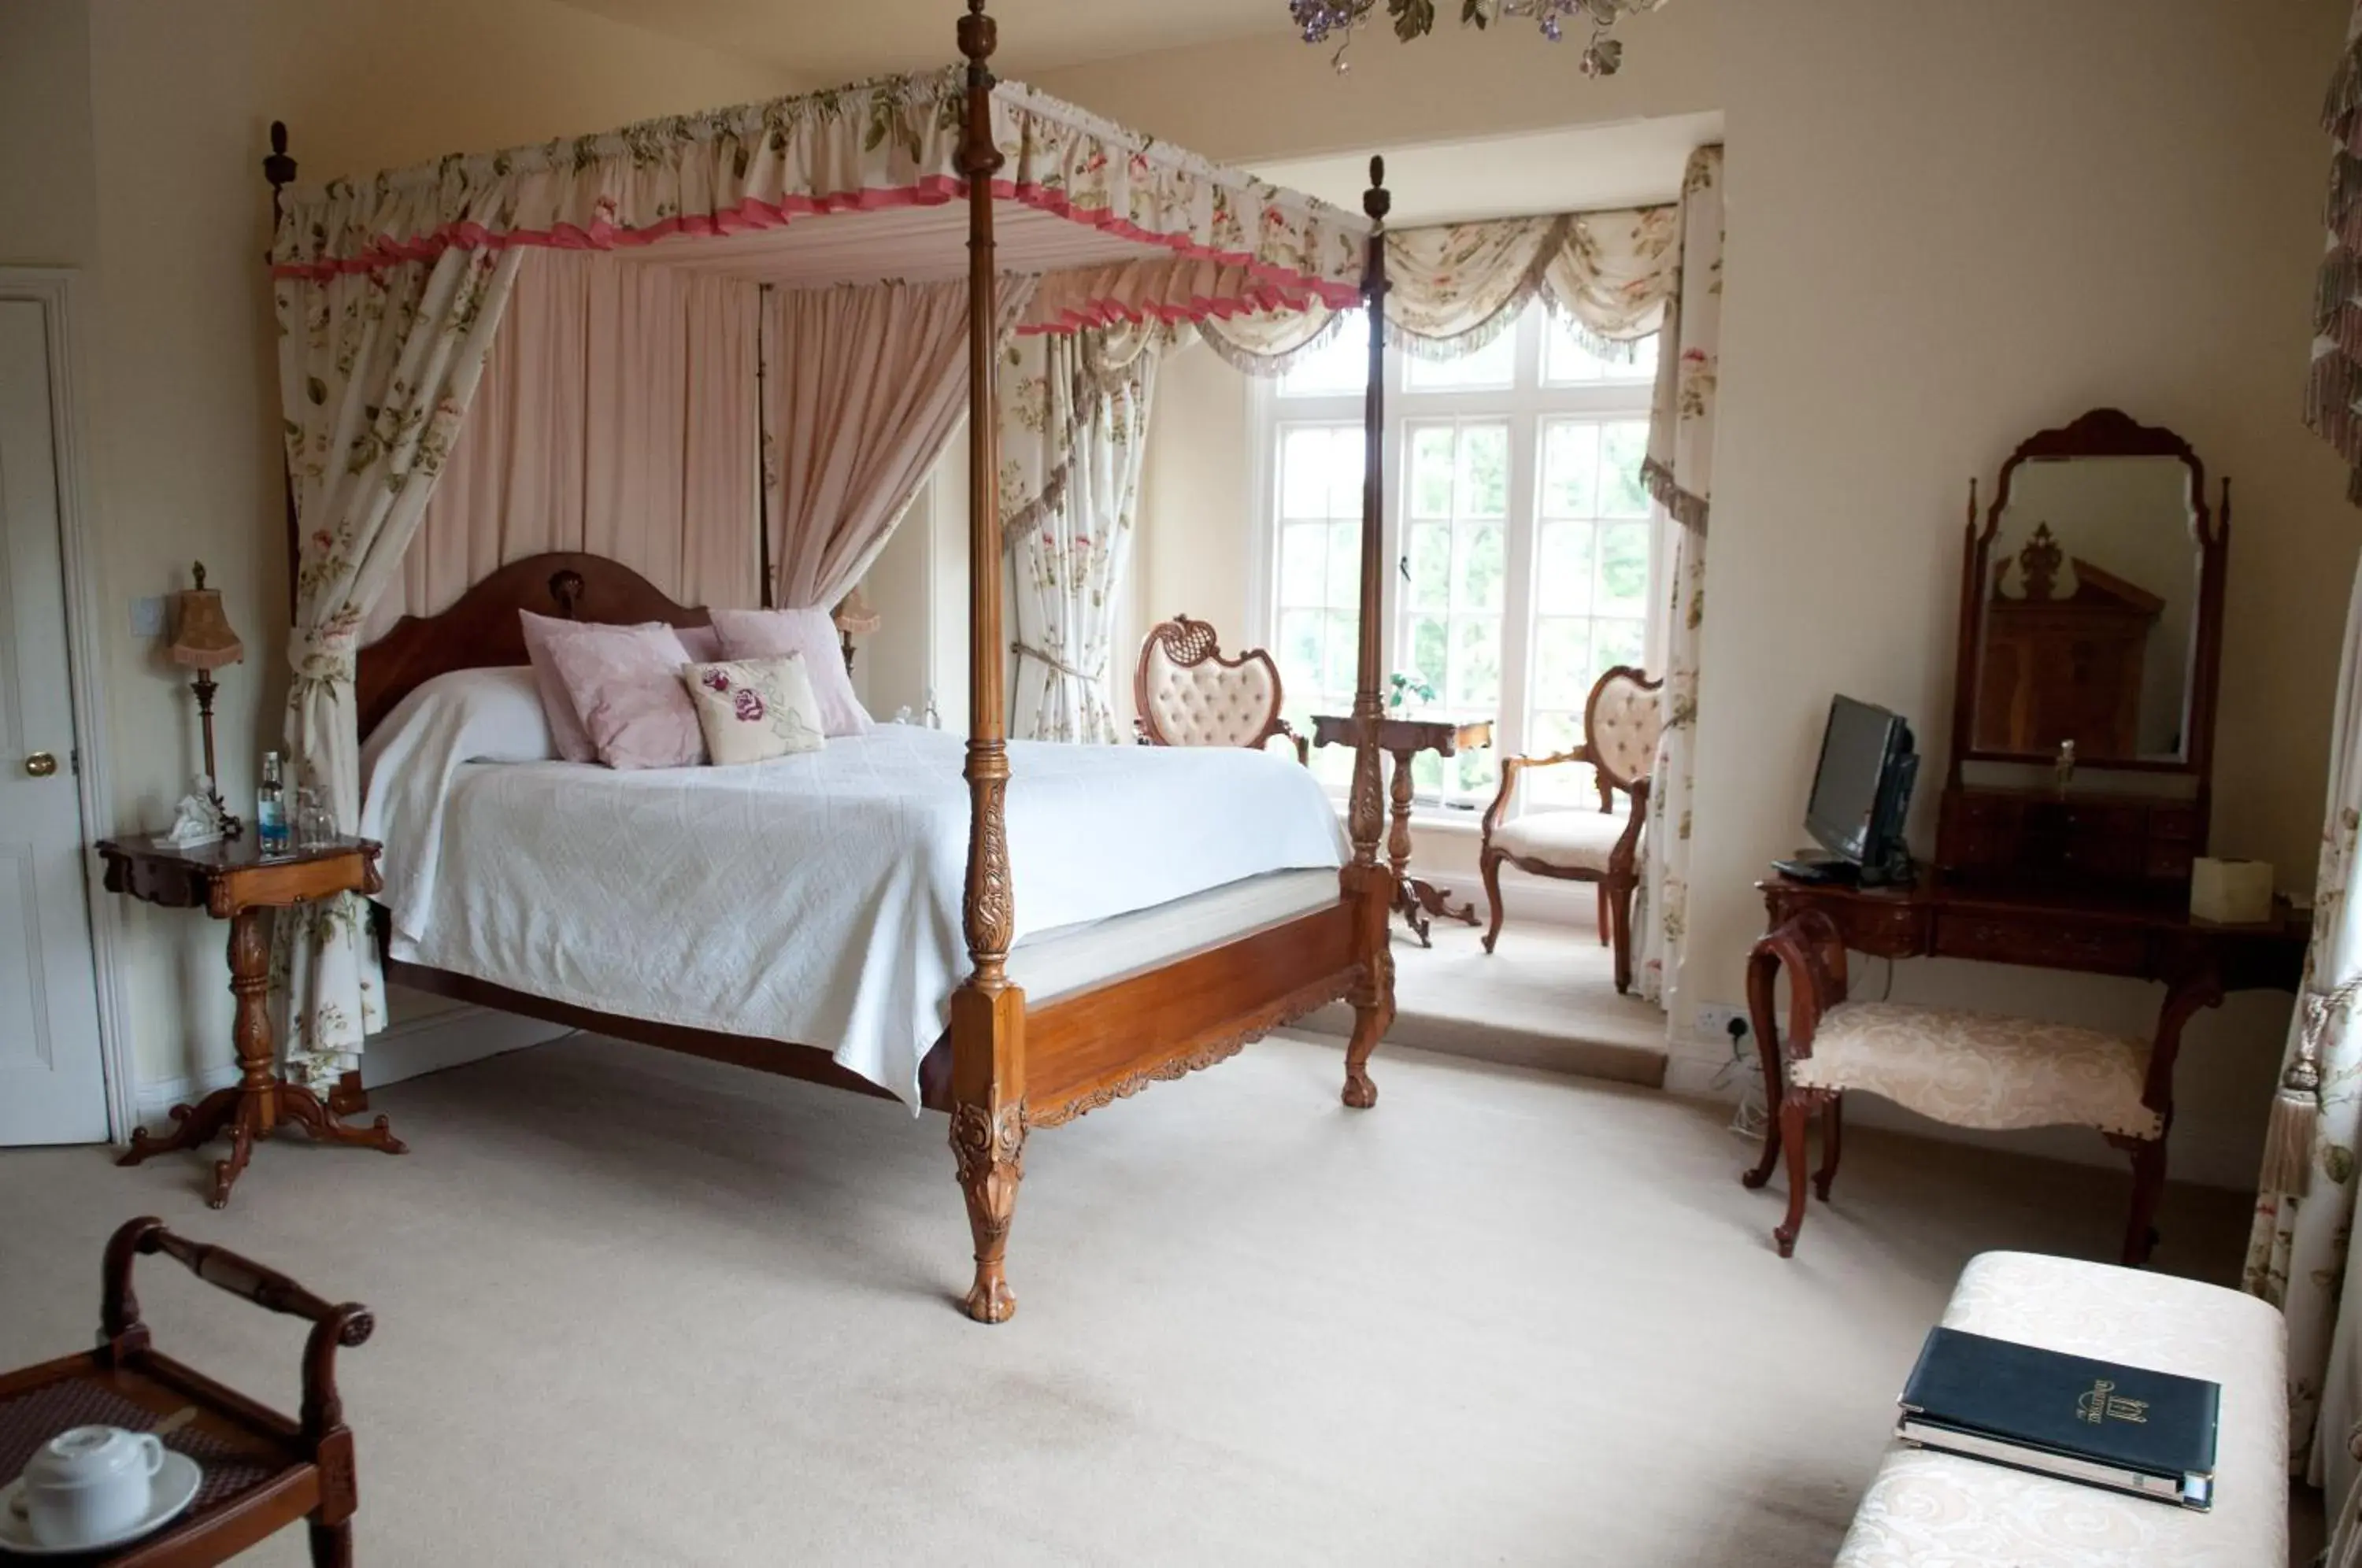 Bedroom, Room Photo in Dunsley Hall Hotel